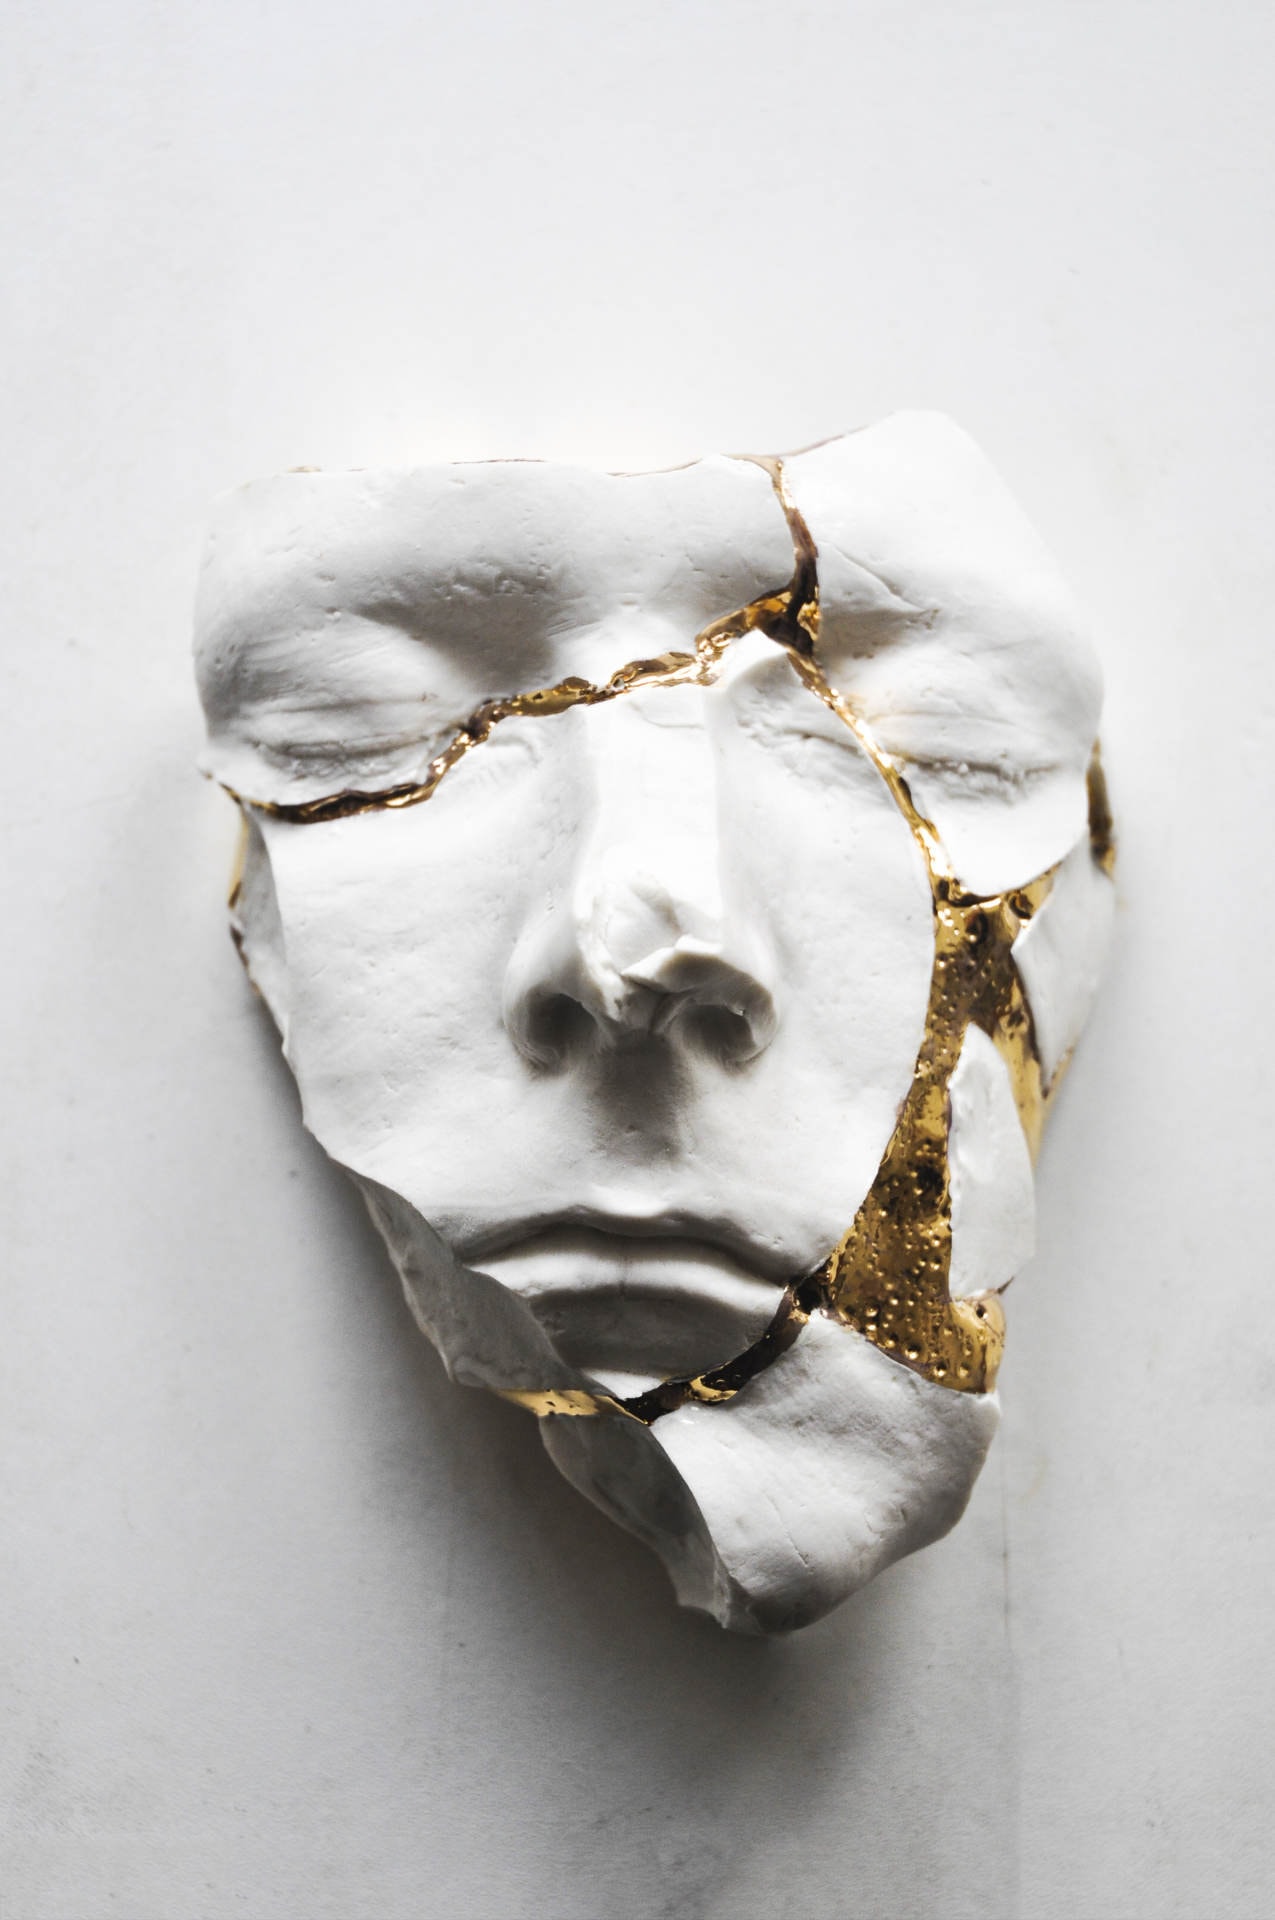 Samuel Yal, Réparation, Porcelaine, or (série) 22x20x19 cm, 2017